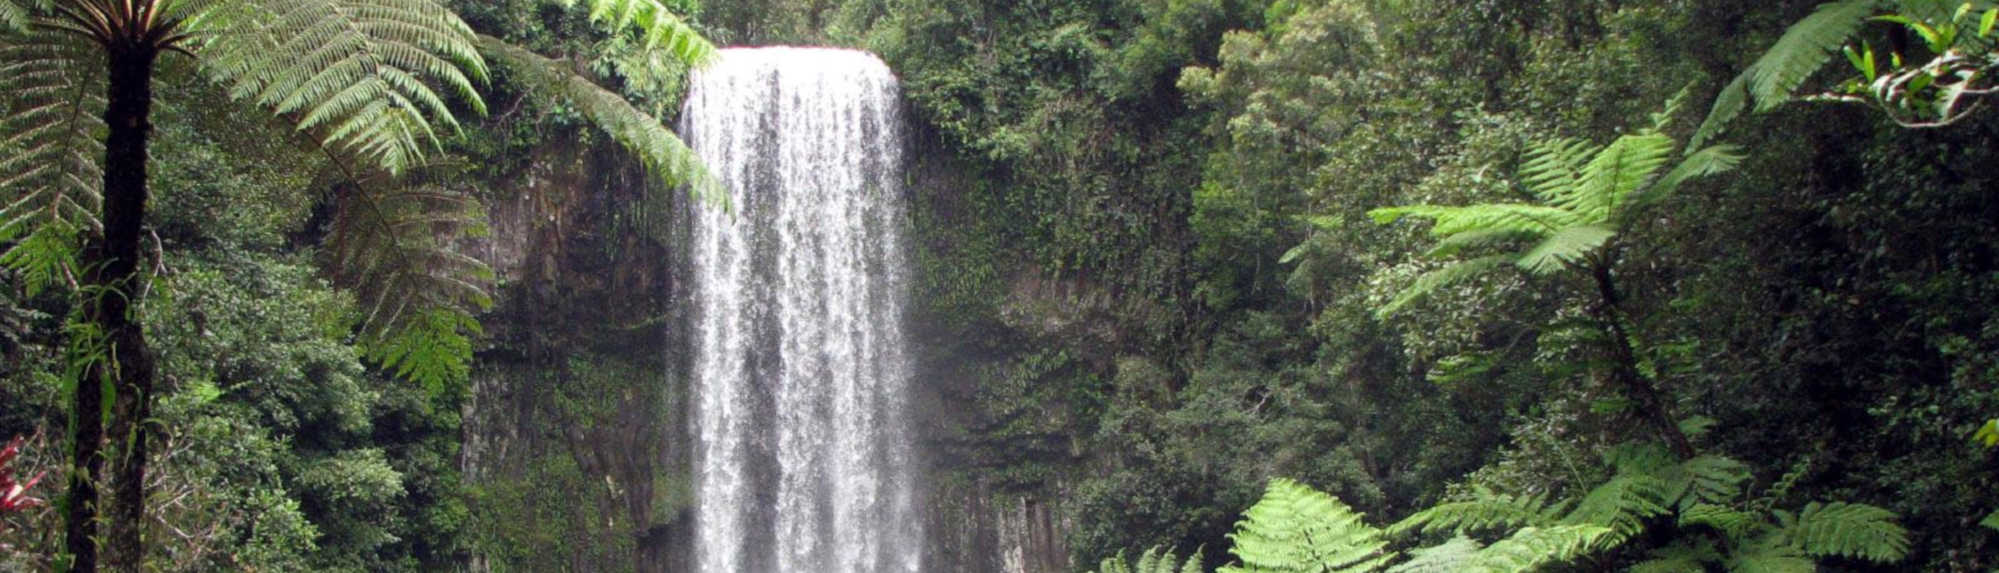 Best Waterfalls in Australia